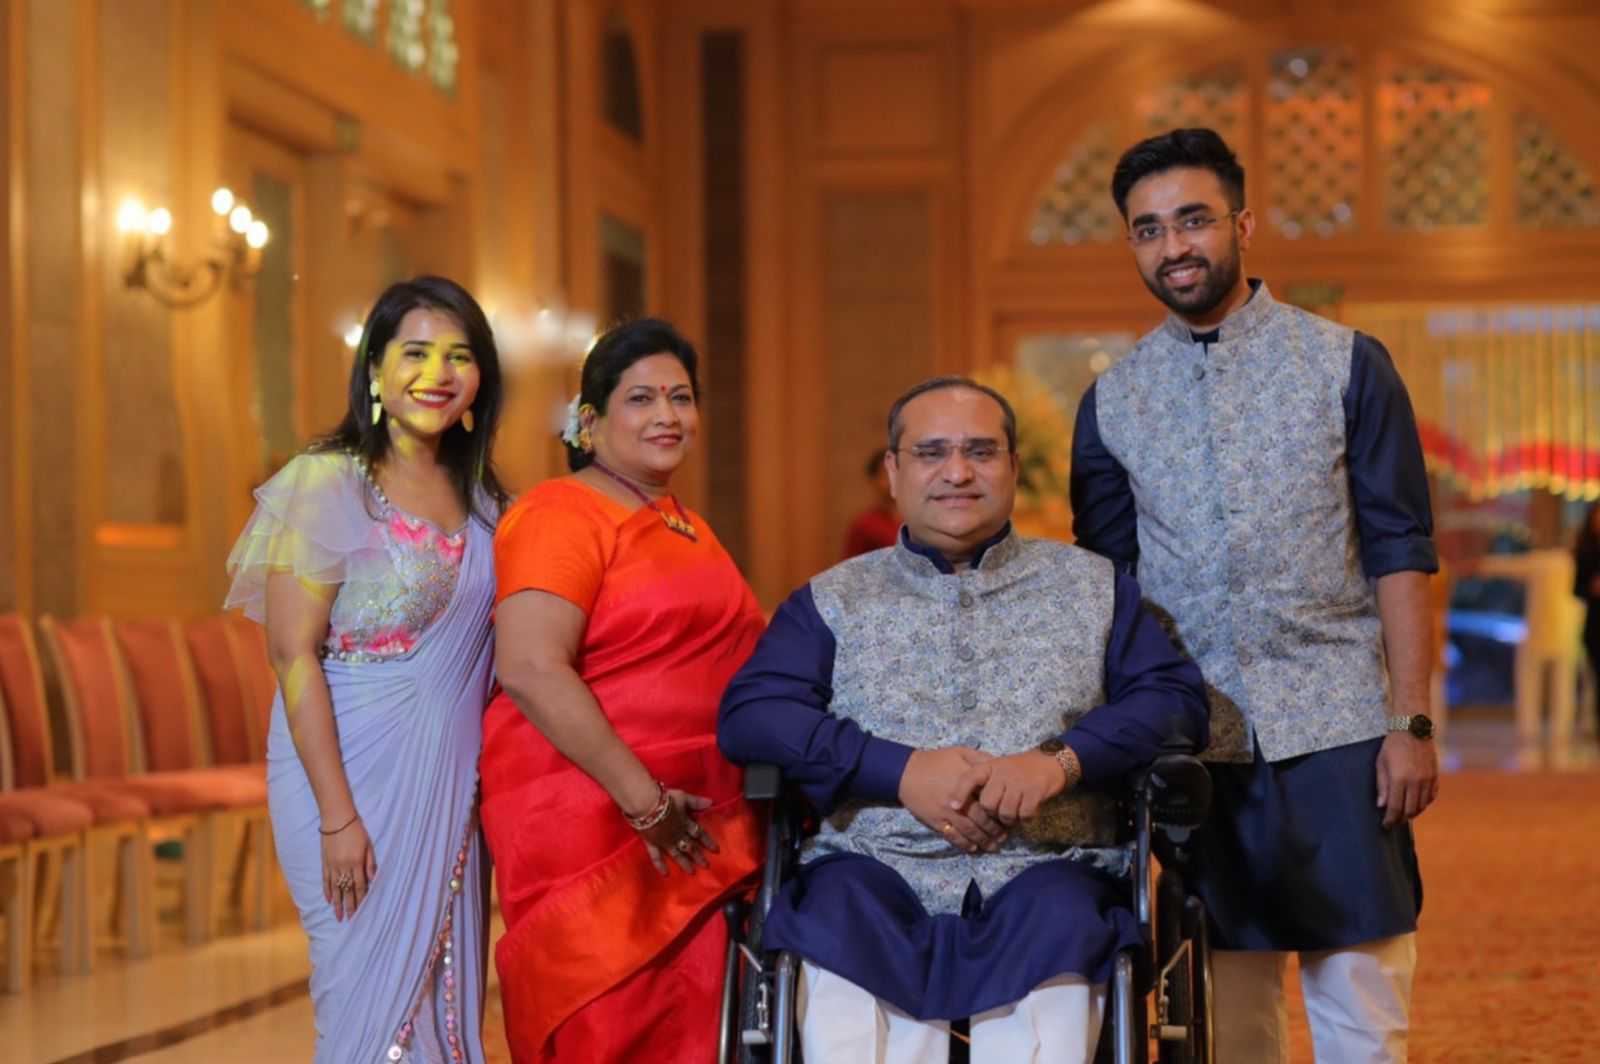 Ajay Gupta with his family